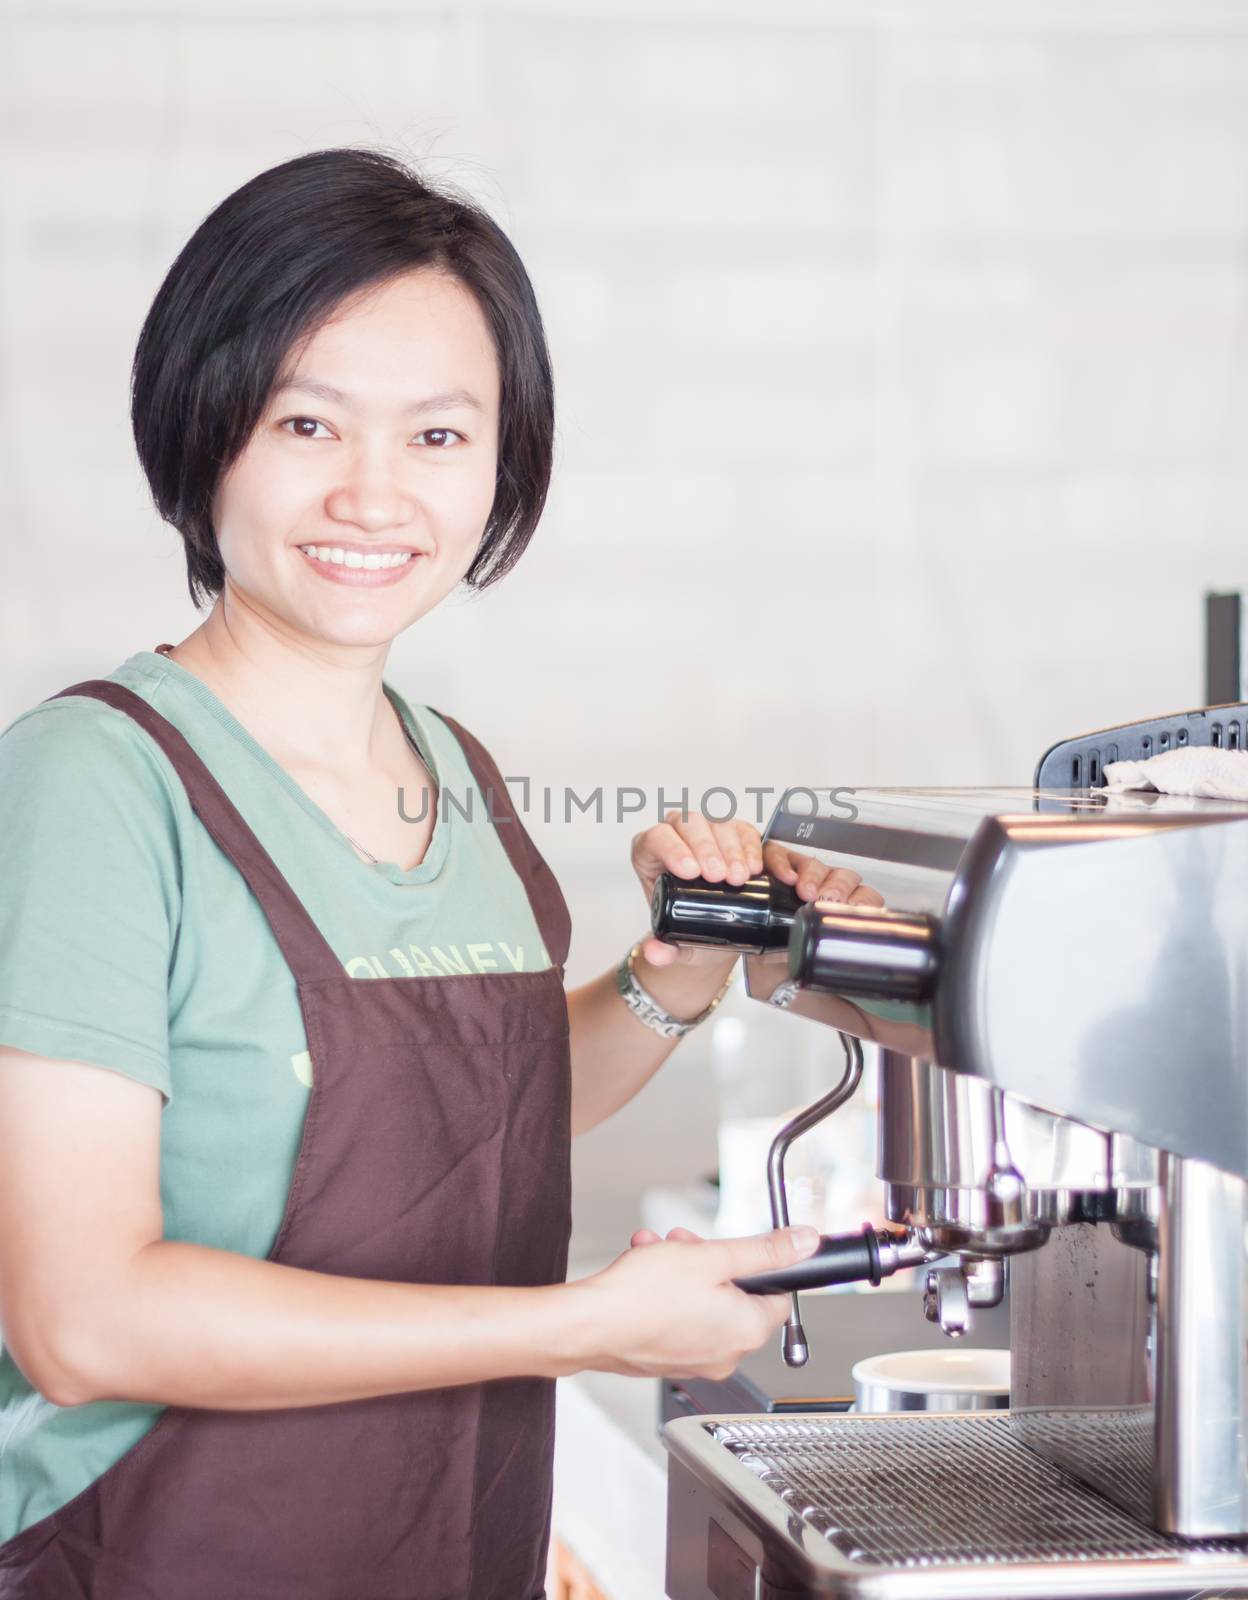 Woman barista enjoy at work by punsayaporn